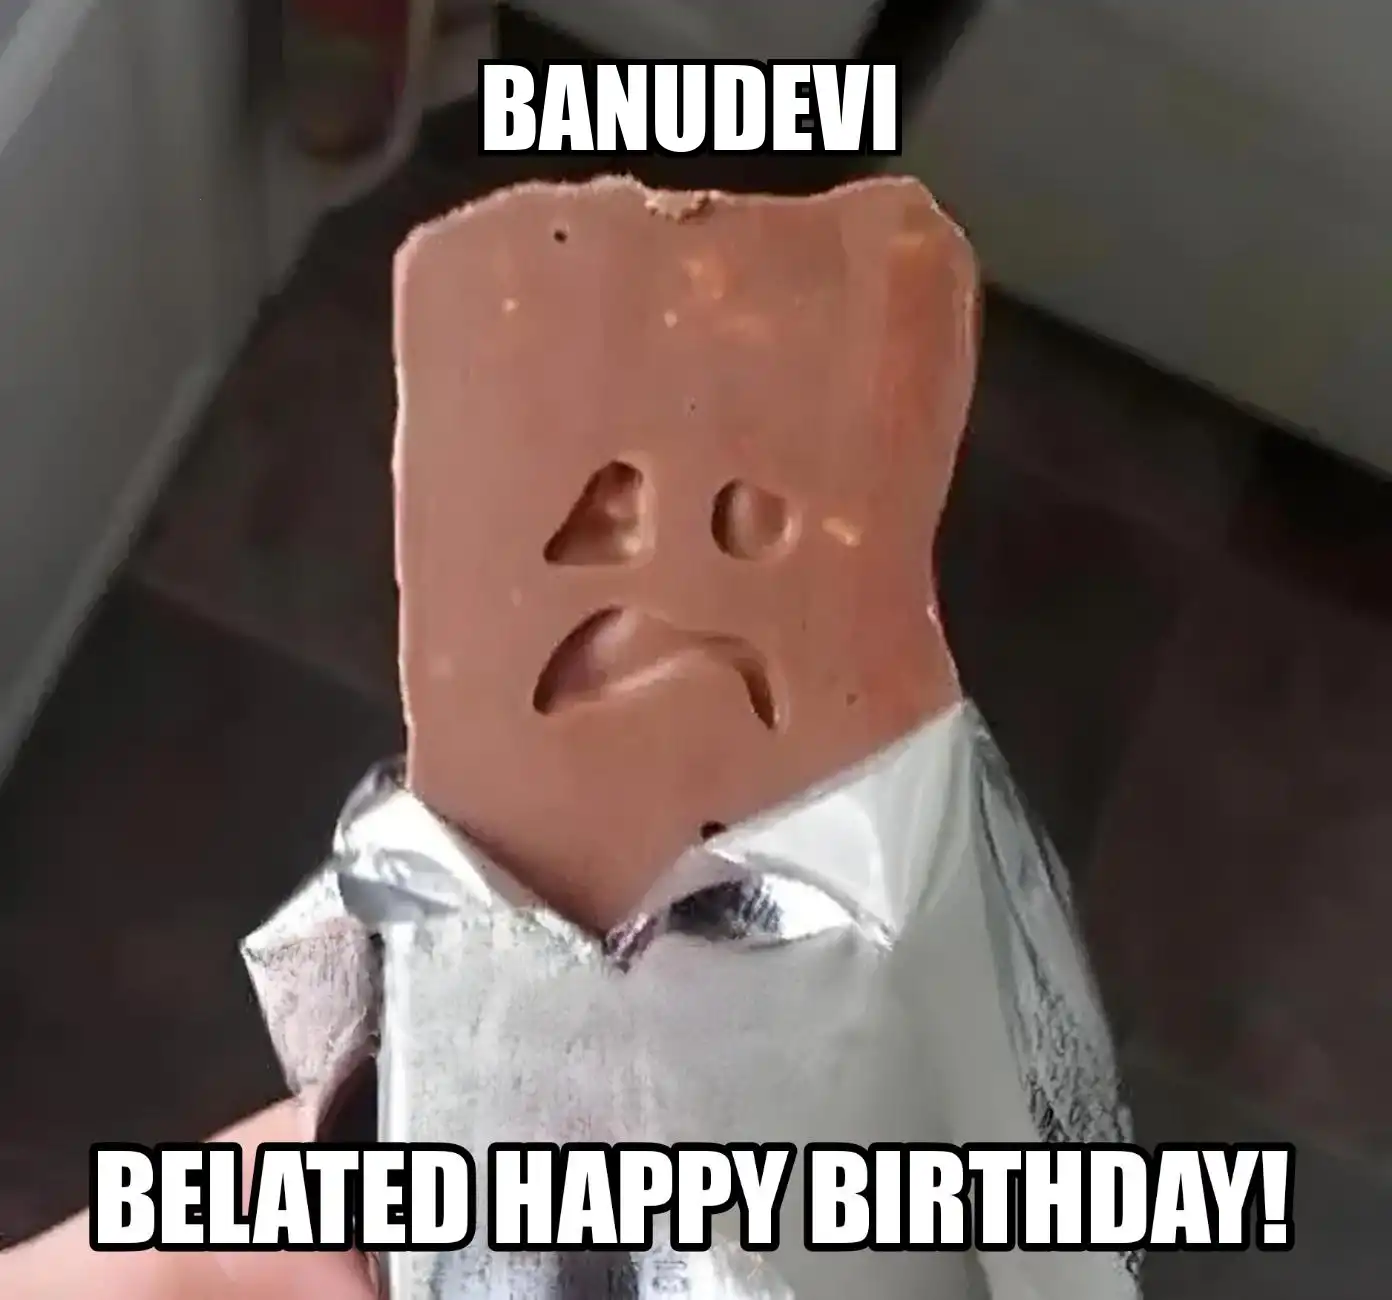 Happy Birthday Banudevi Belated Happy Birthday Meme